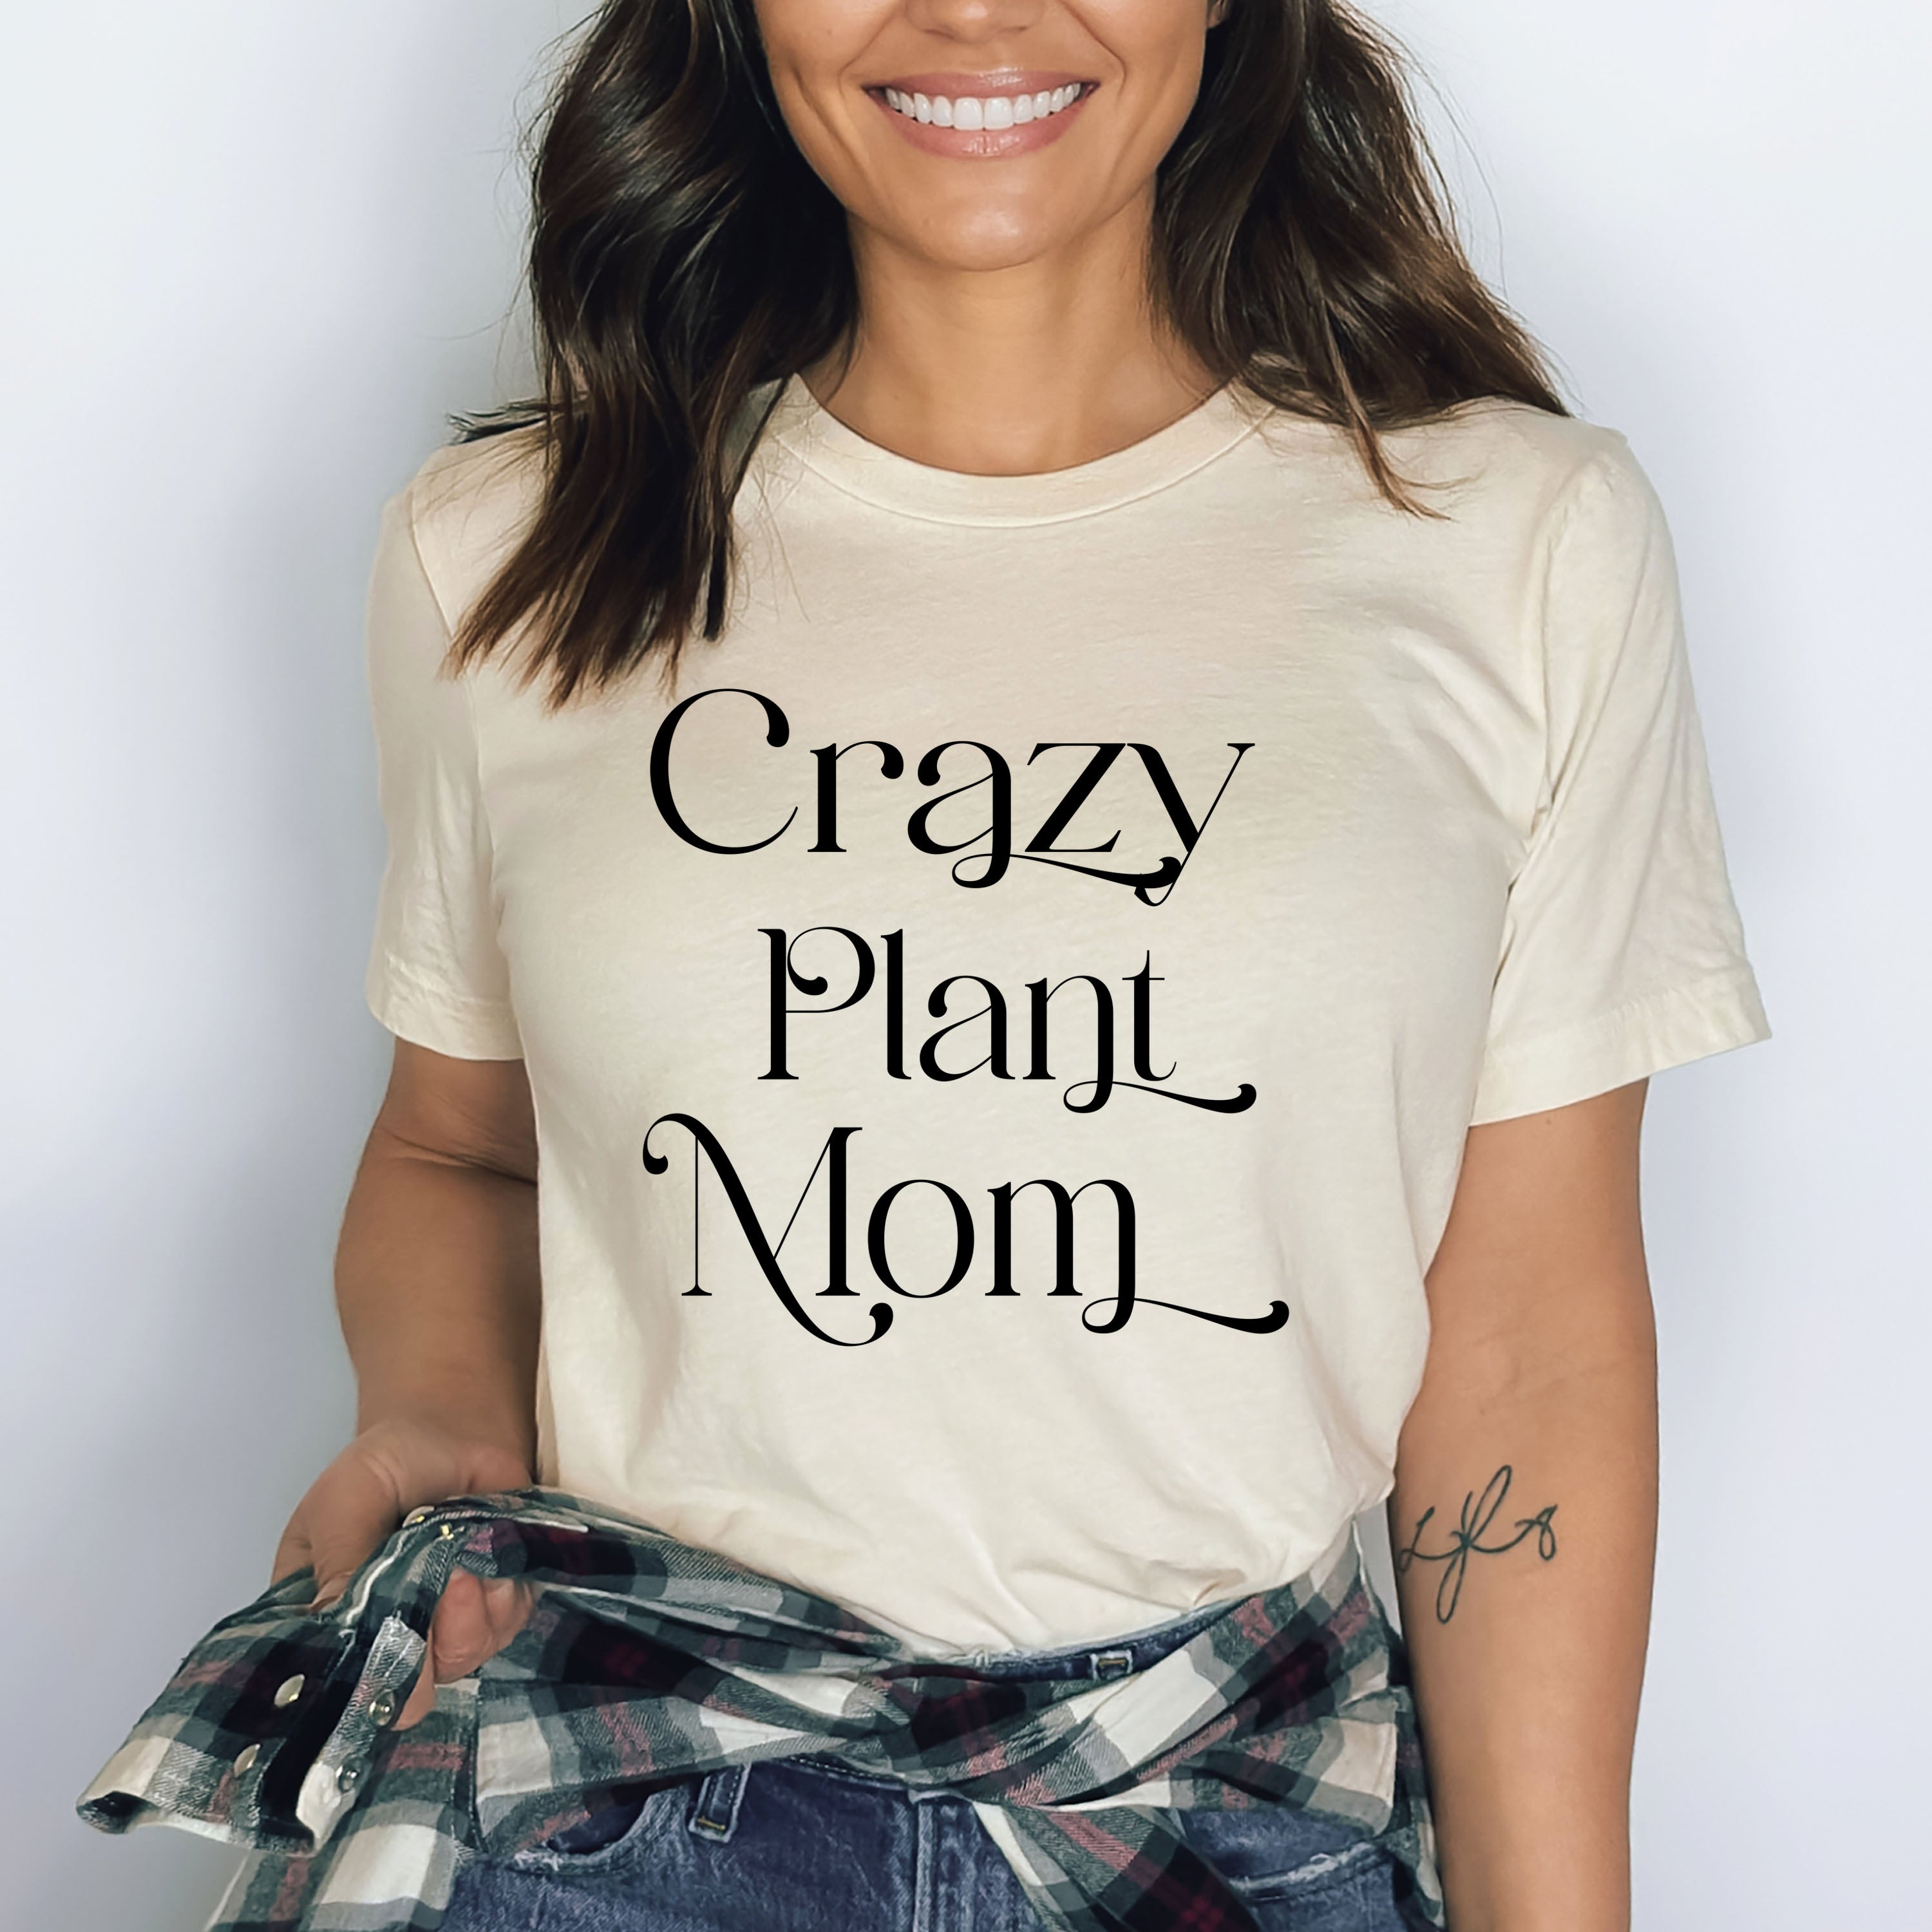 Crazy Plant Mom - Bella canvas